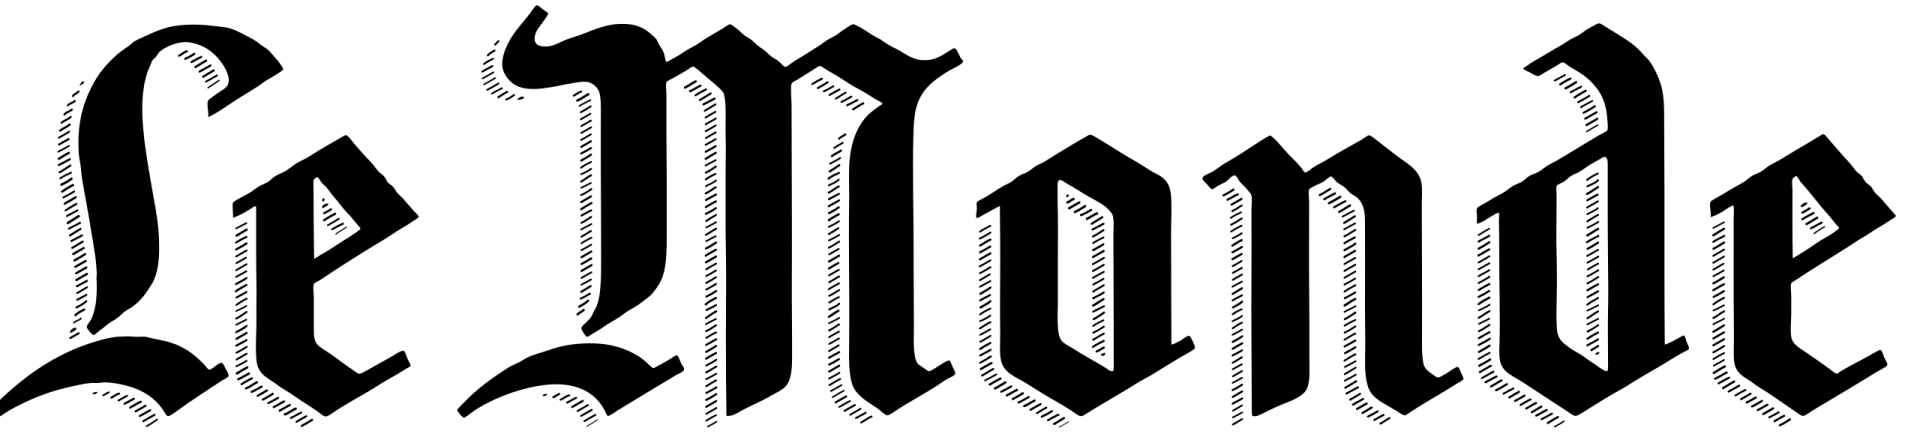 Le monde logo svg